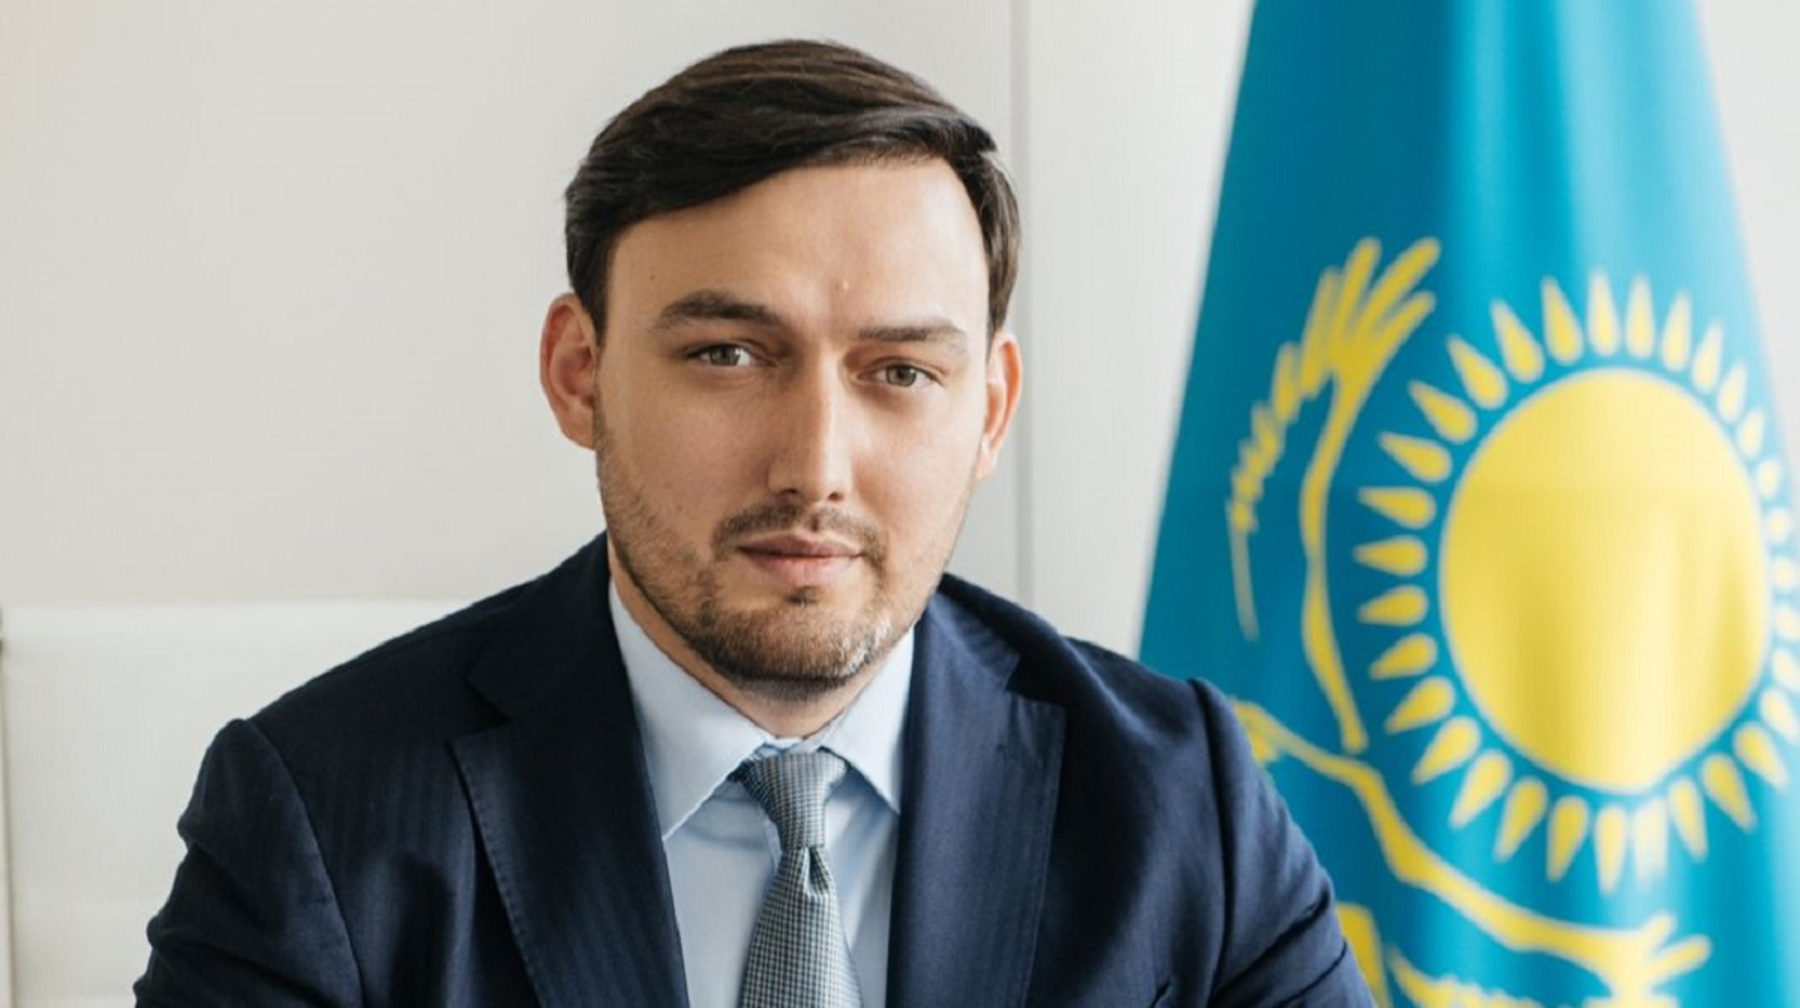 Руководителем управления предпринимательства и инвестиций города Алматы назначен Алишер Сатыбалдиев